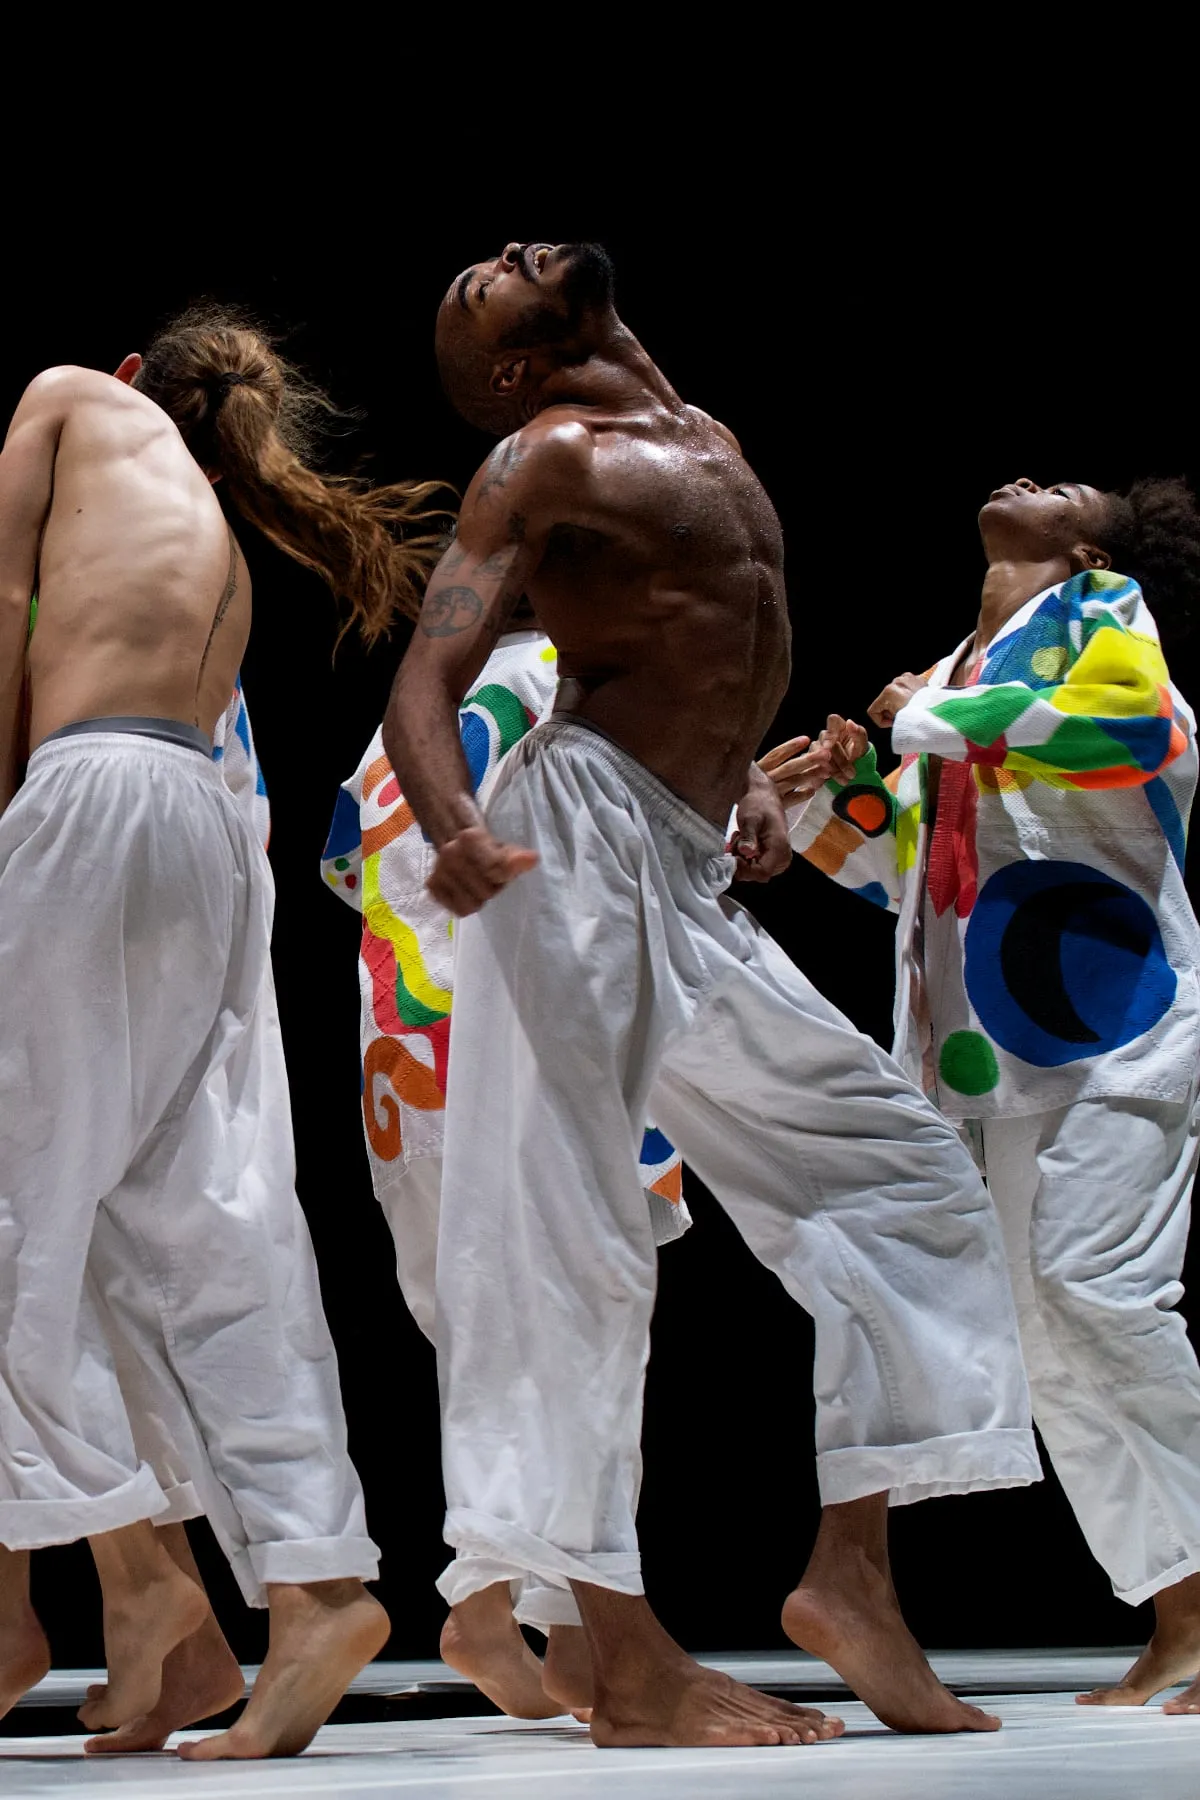 cuban dancers wearing colorful kimonos performing brutal